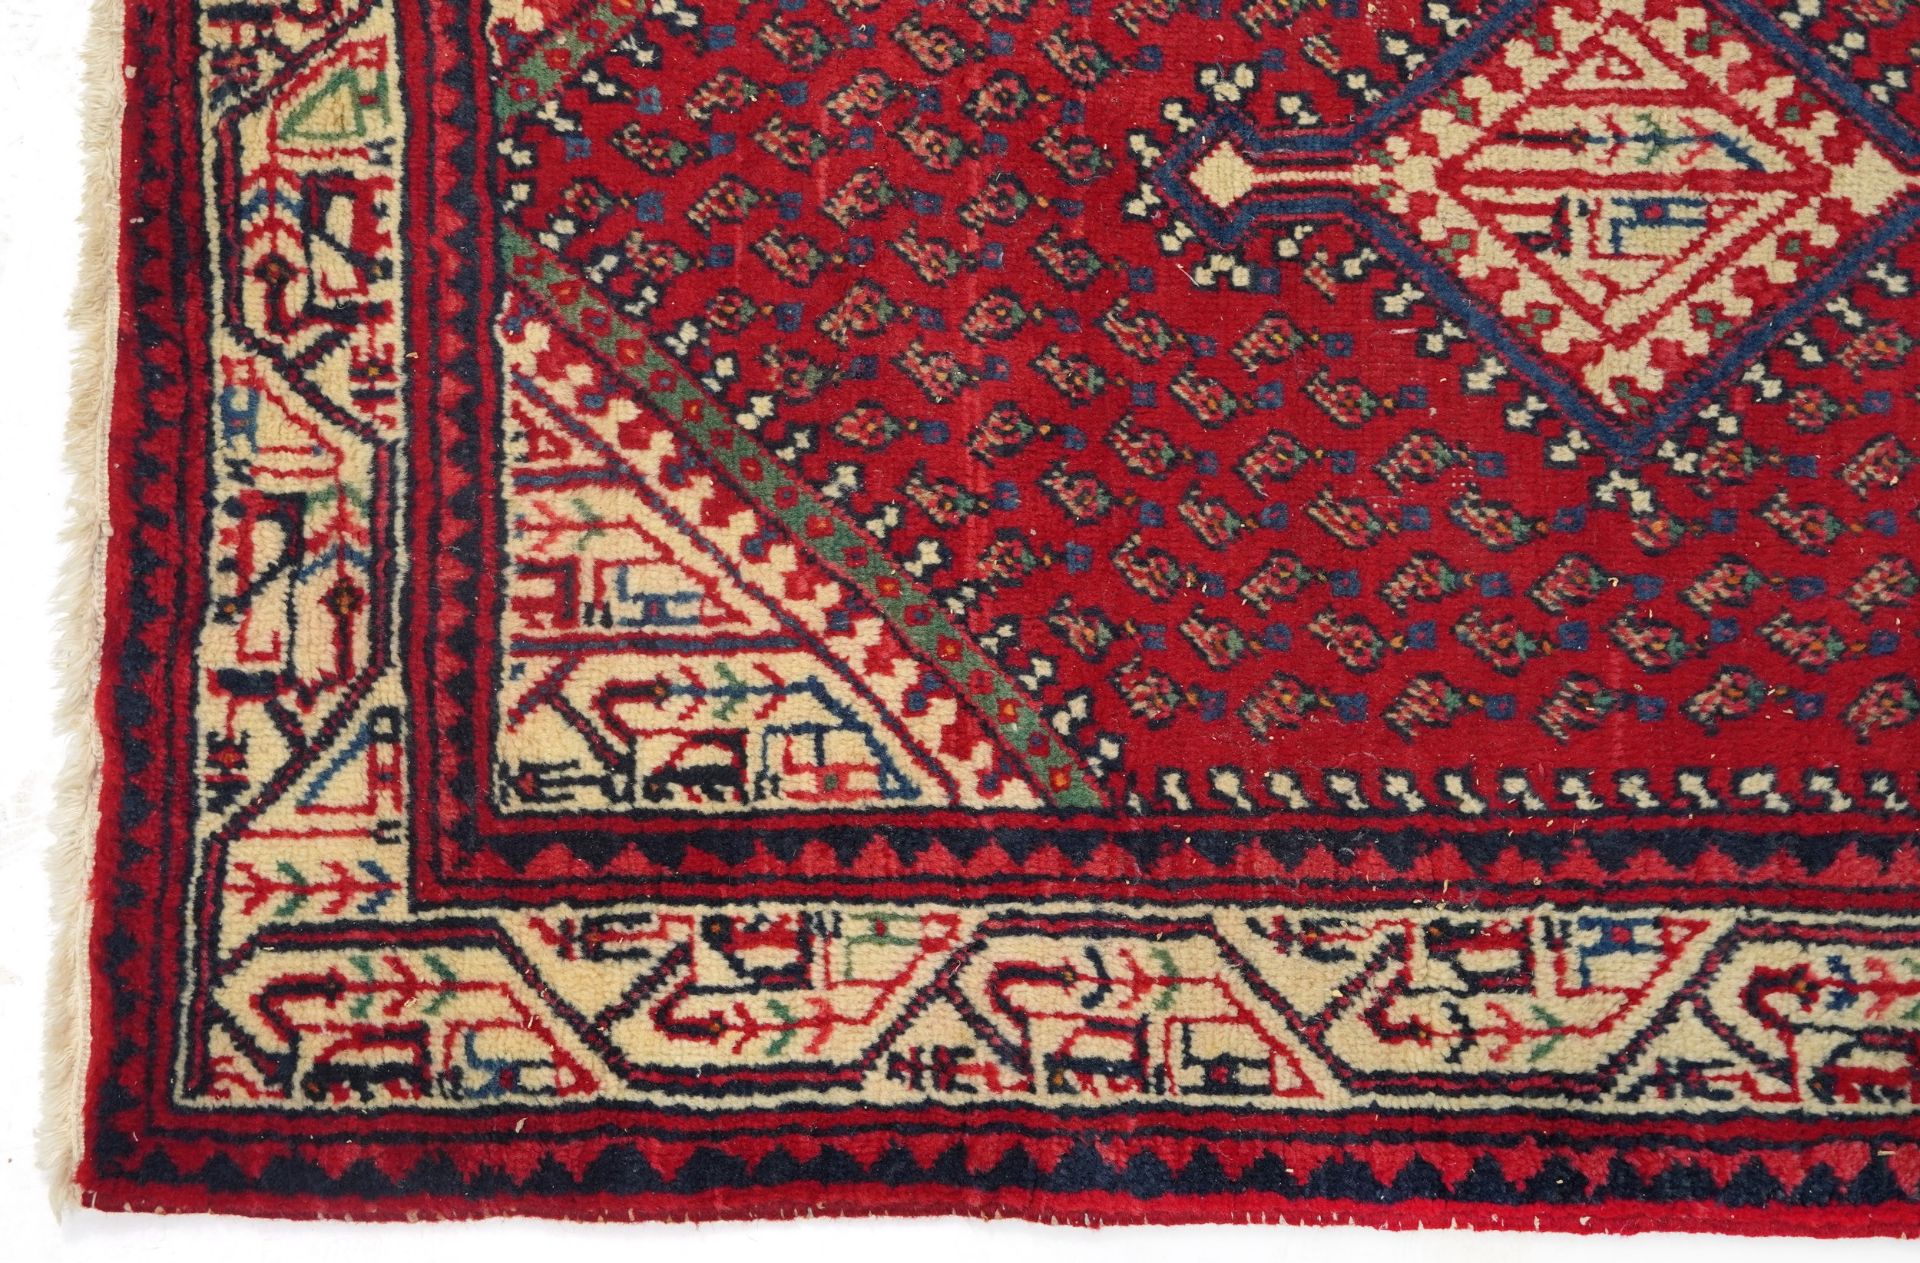 Rectangular Middle Eastern red ground rug, 155cm x 105cm - Bild 4 aus 6